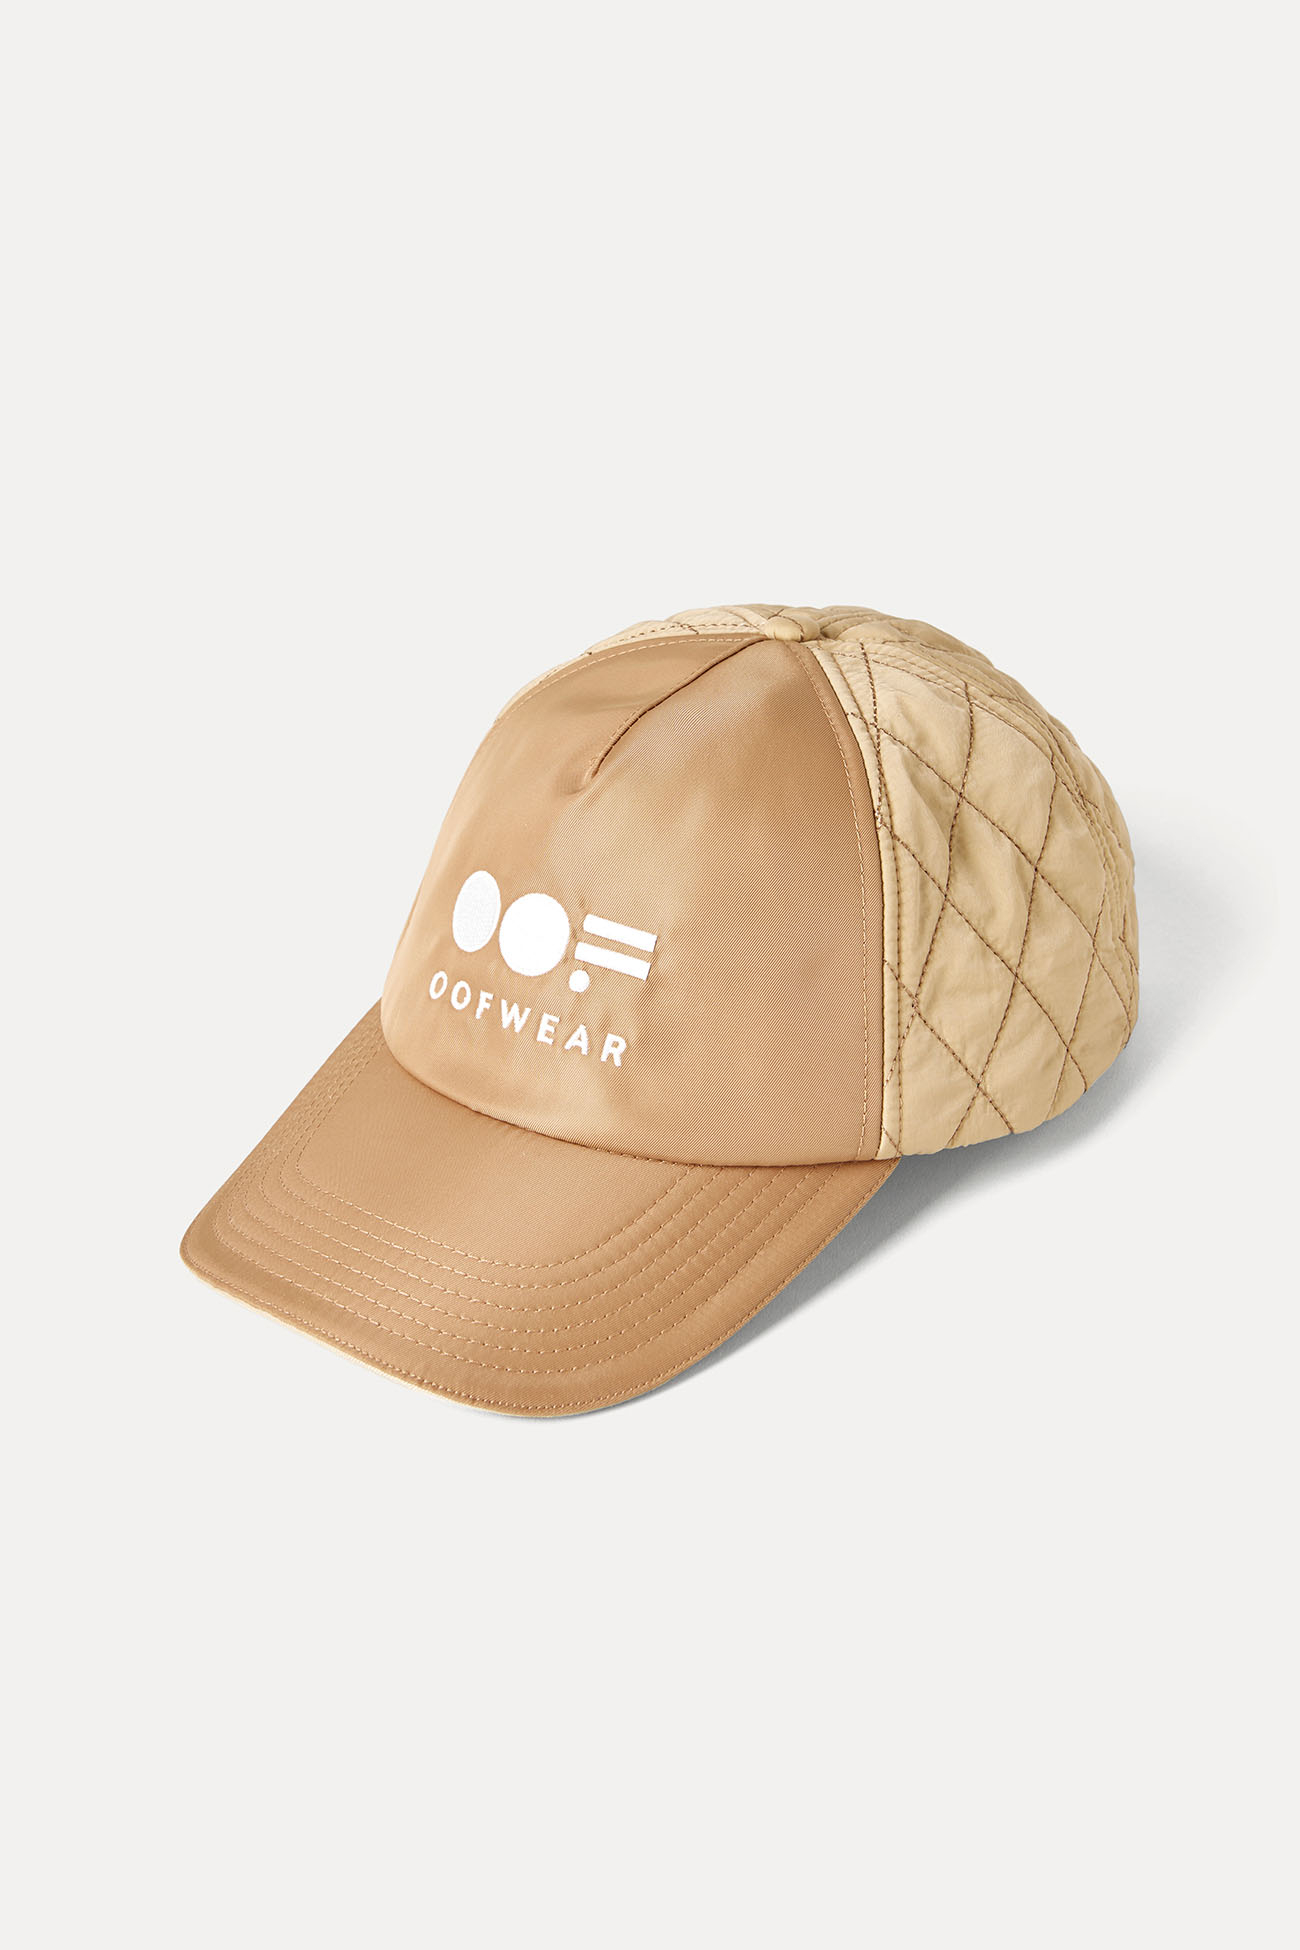 BASEBALL HAT 3073 - BEIGE - OOF WEAR